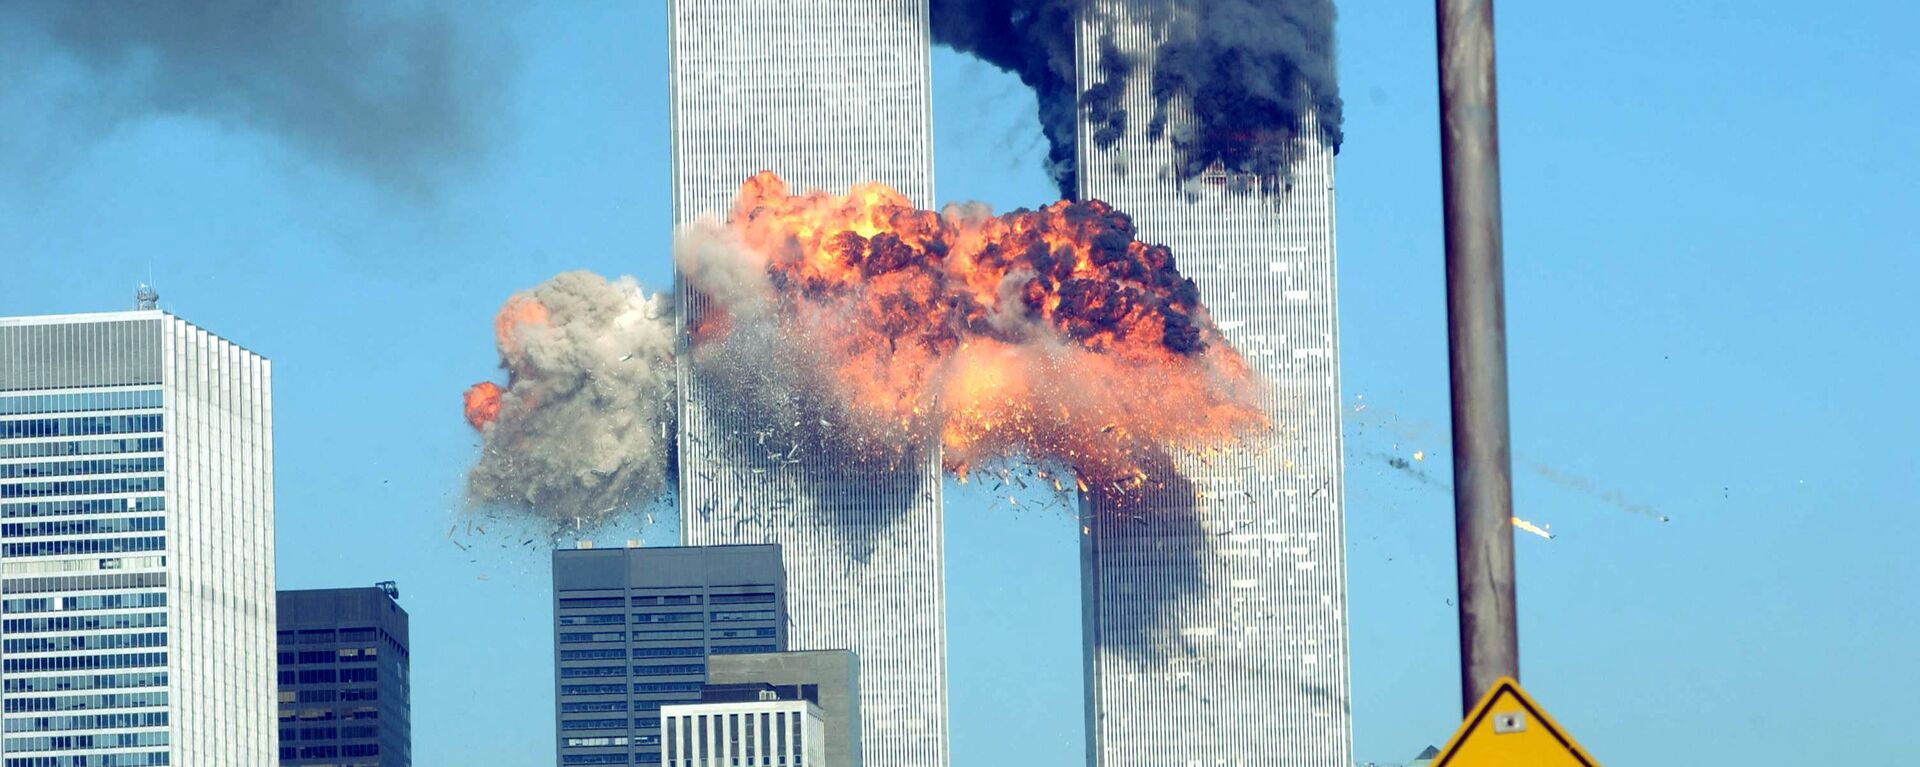 Разрушения в результате теракта 11 сентября в Нью-Йорке - Sputnik Արմենիա, 1920, 11.09.2021